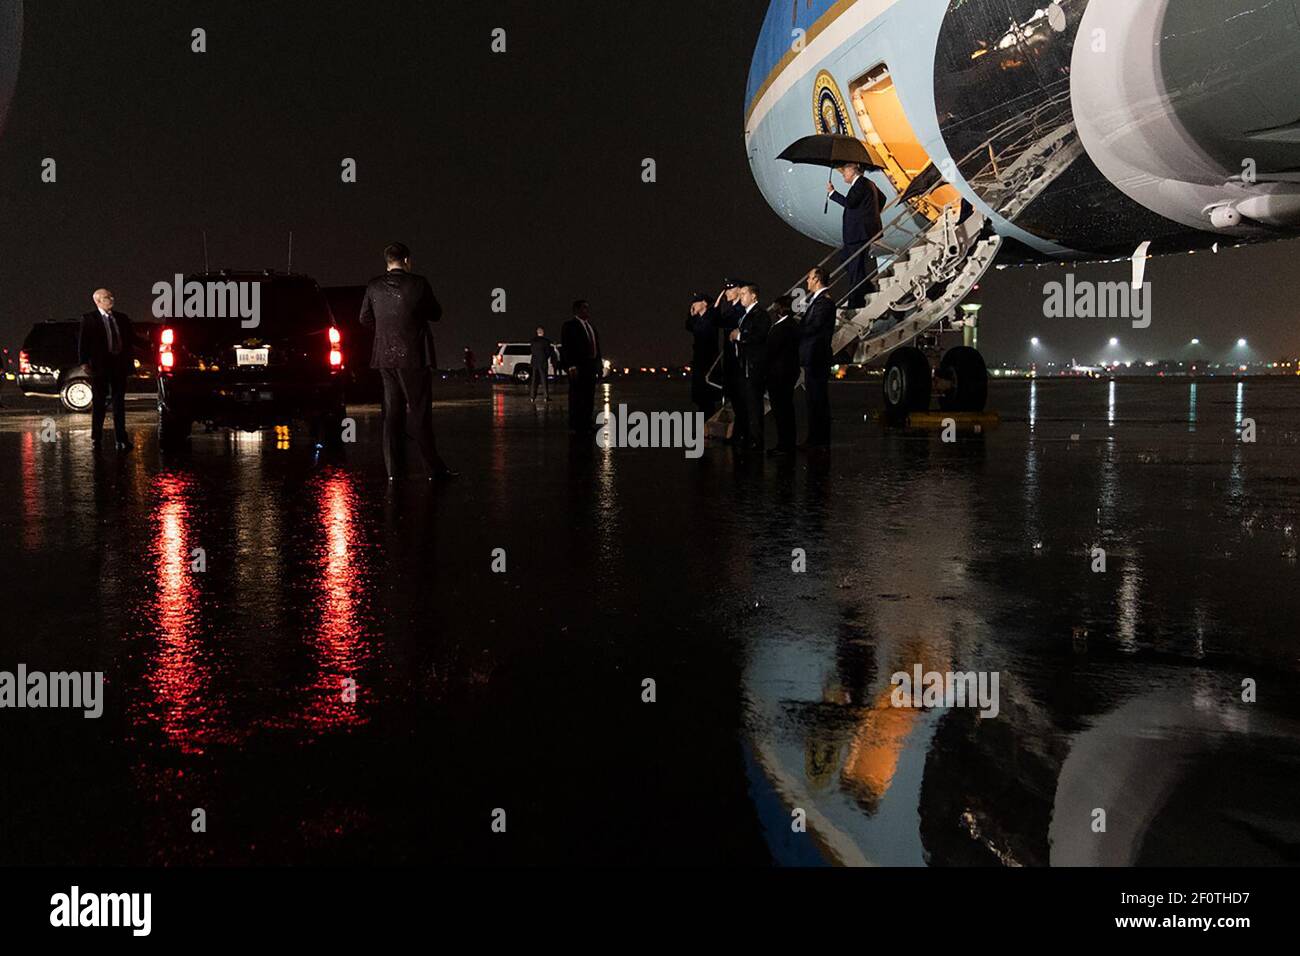 Präsident Donald Trump trägt einen Regenschirm als Ausstieg Air Force One während eines Regensturms bei seiner Ankunft am Palm Beach International Airport in West Palm Beach Fla. Freitag, 31 2020. Januar, und fährt auf dem Weg nach Mar-a-Lago. Stockfoto